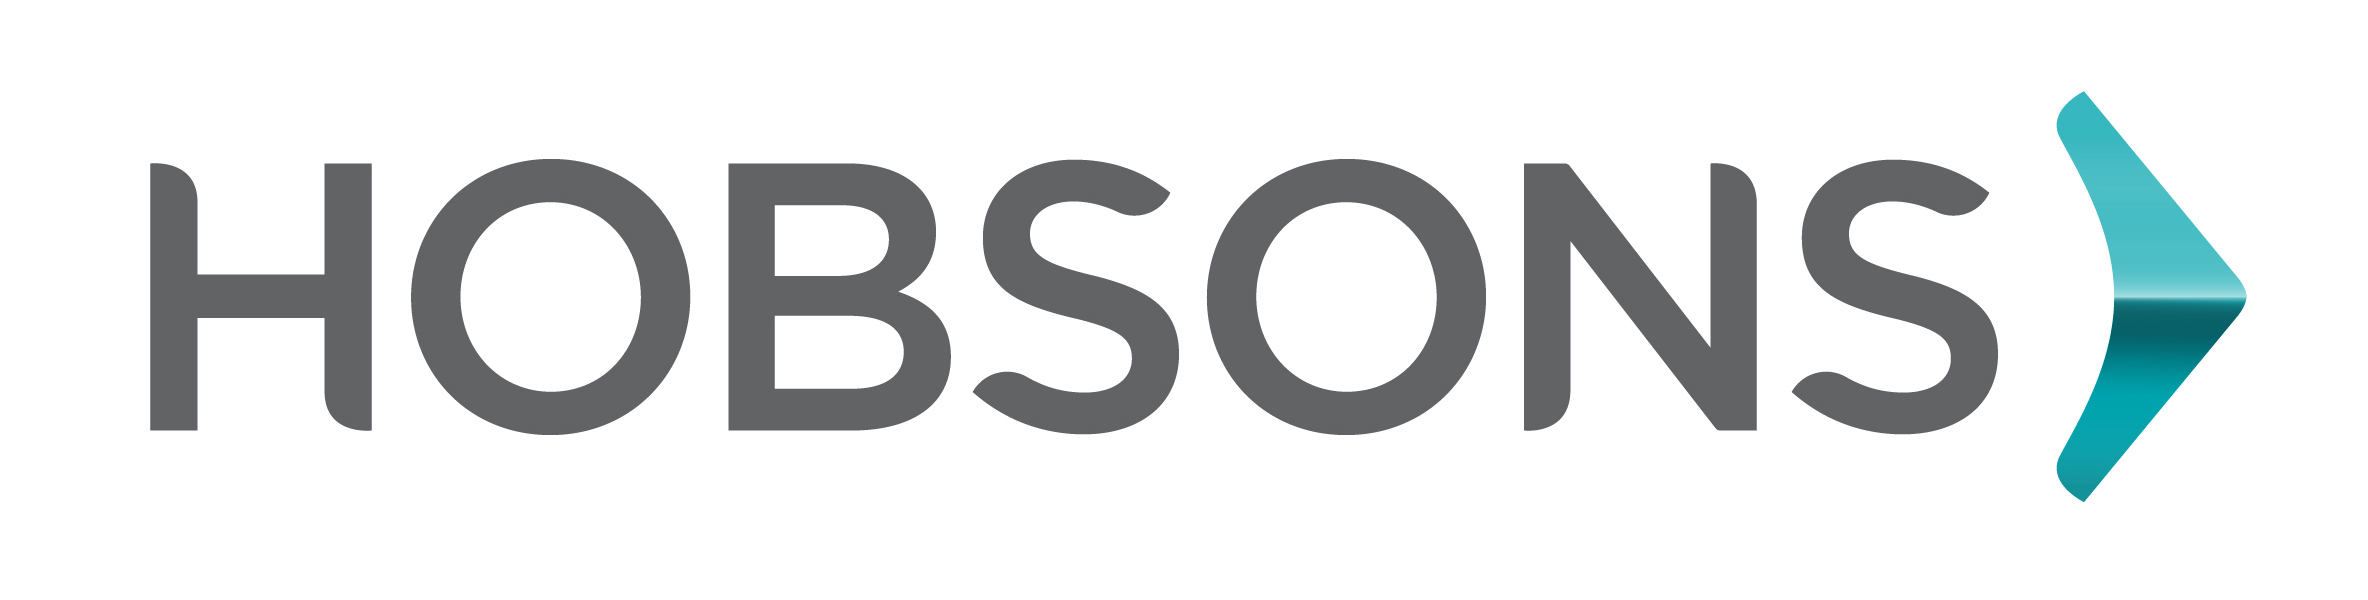 hobsons_logo_rgb